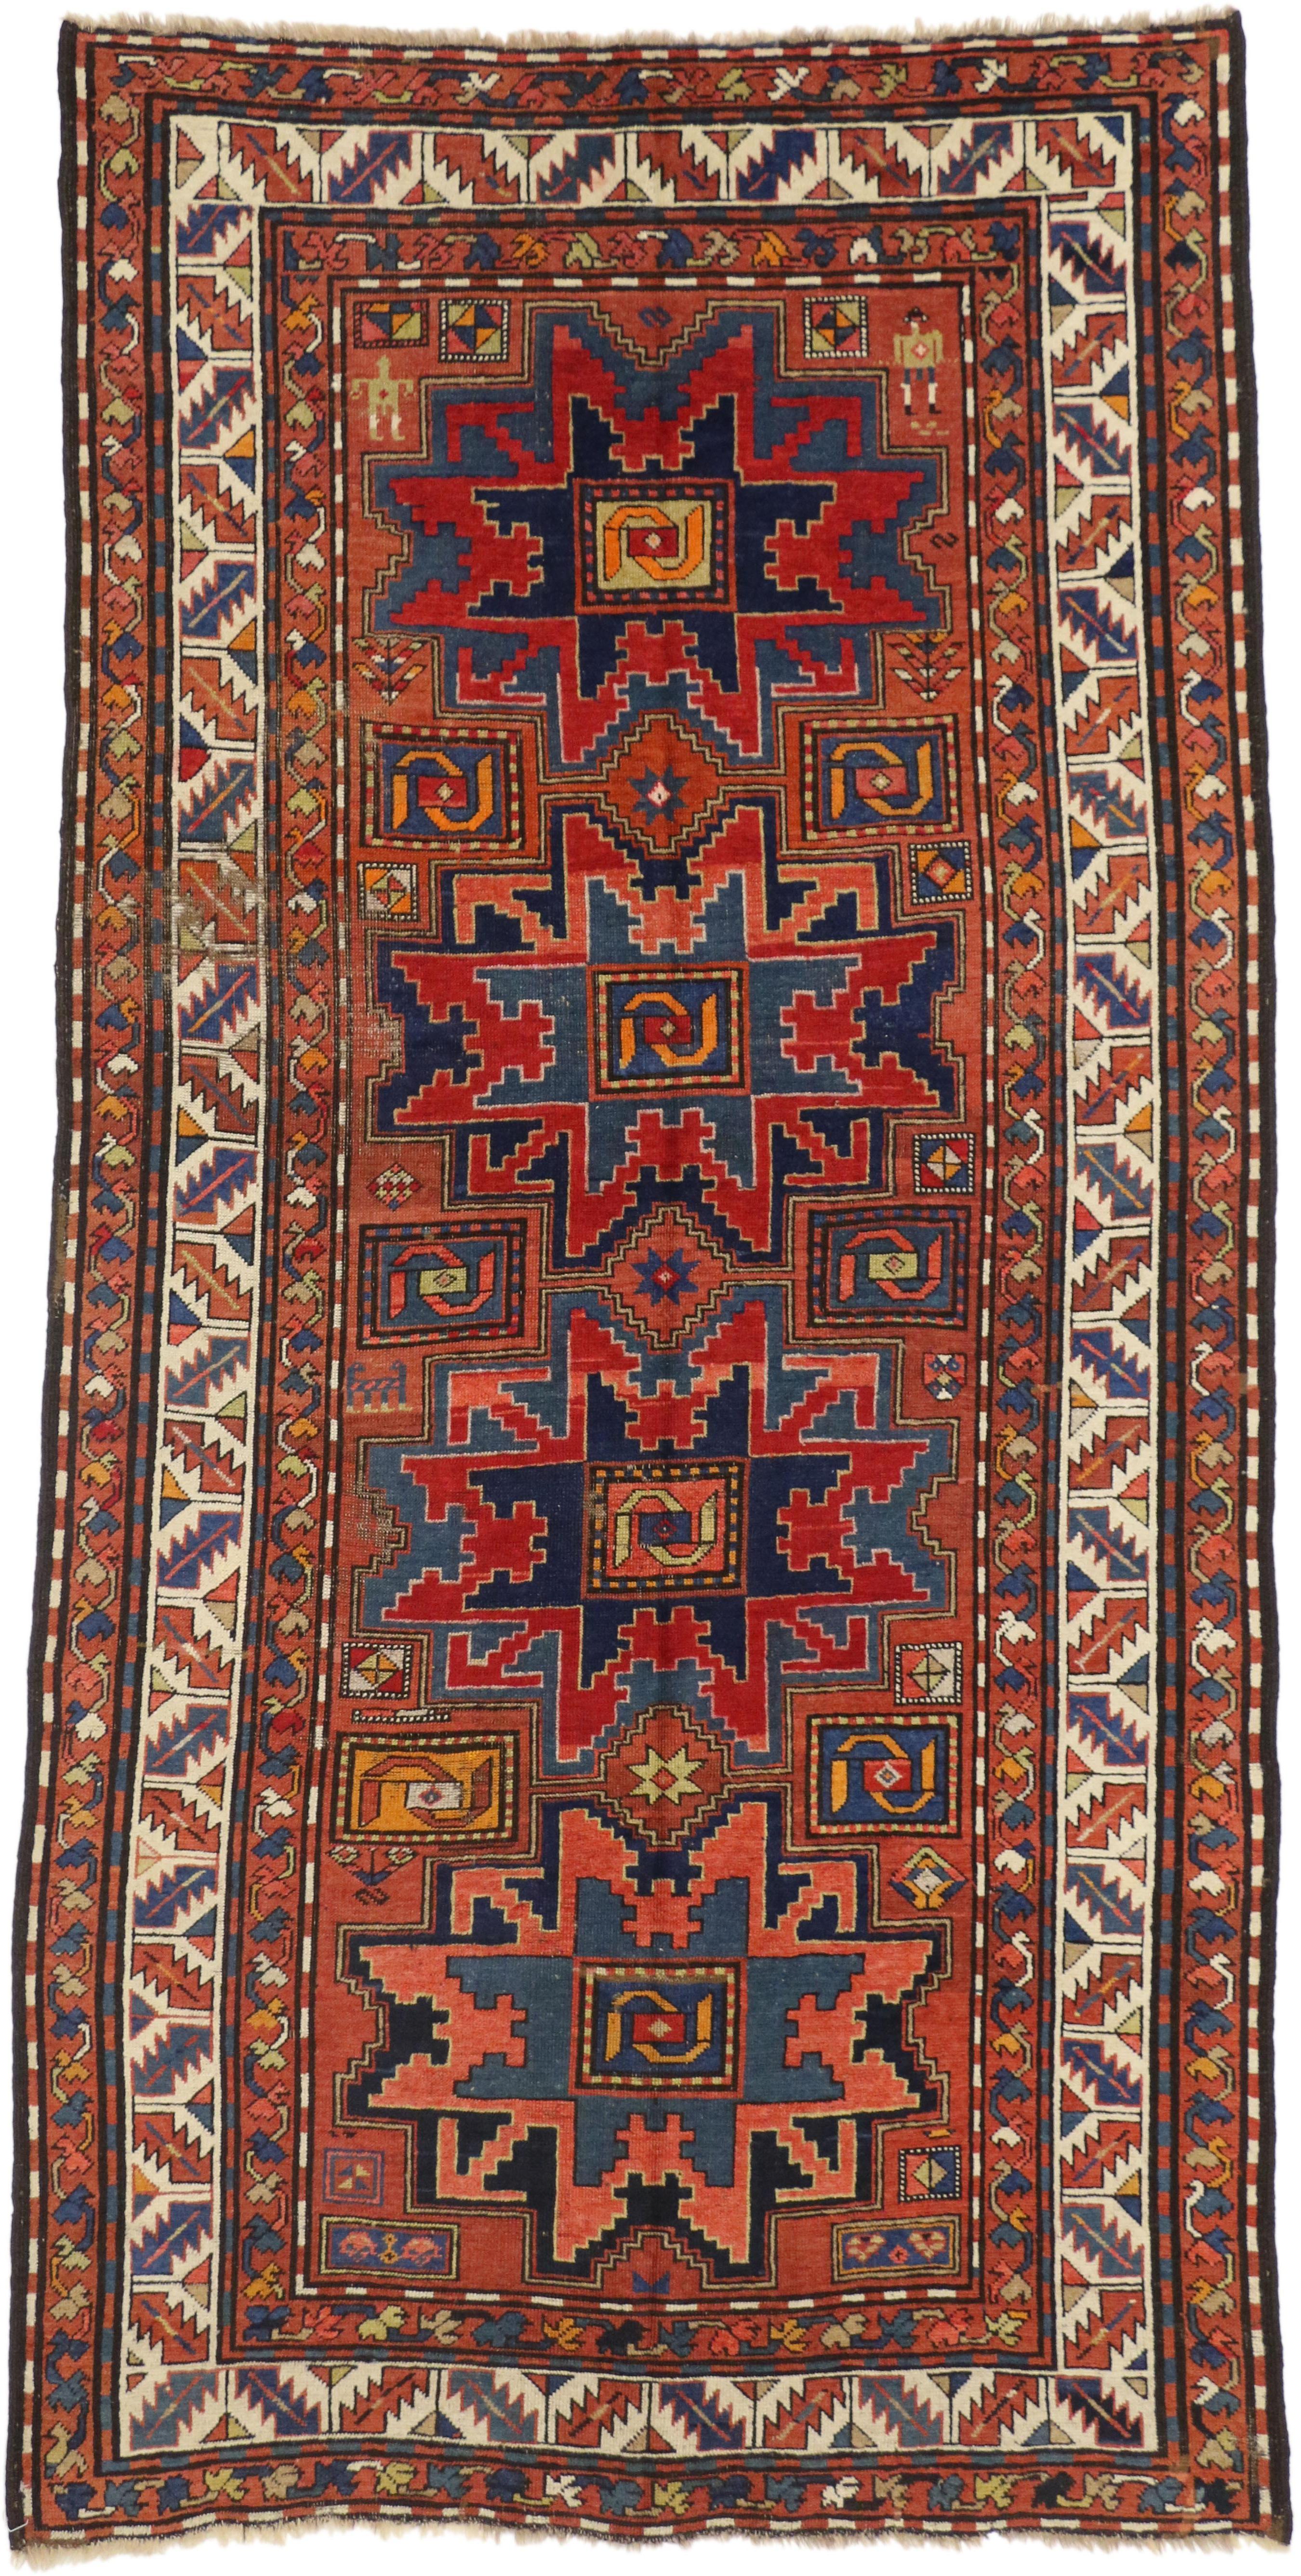 Antique Caucasian Kazak Rug, Nomadic Charm Meets Stylish Durability